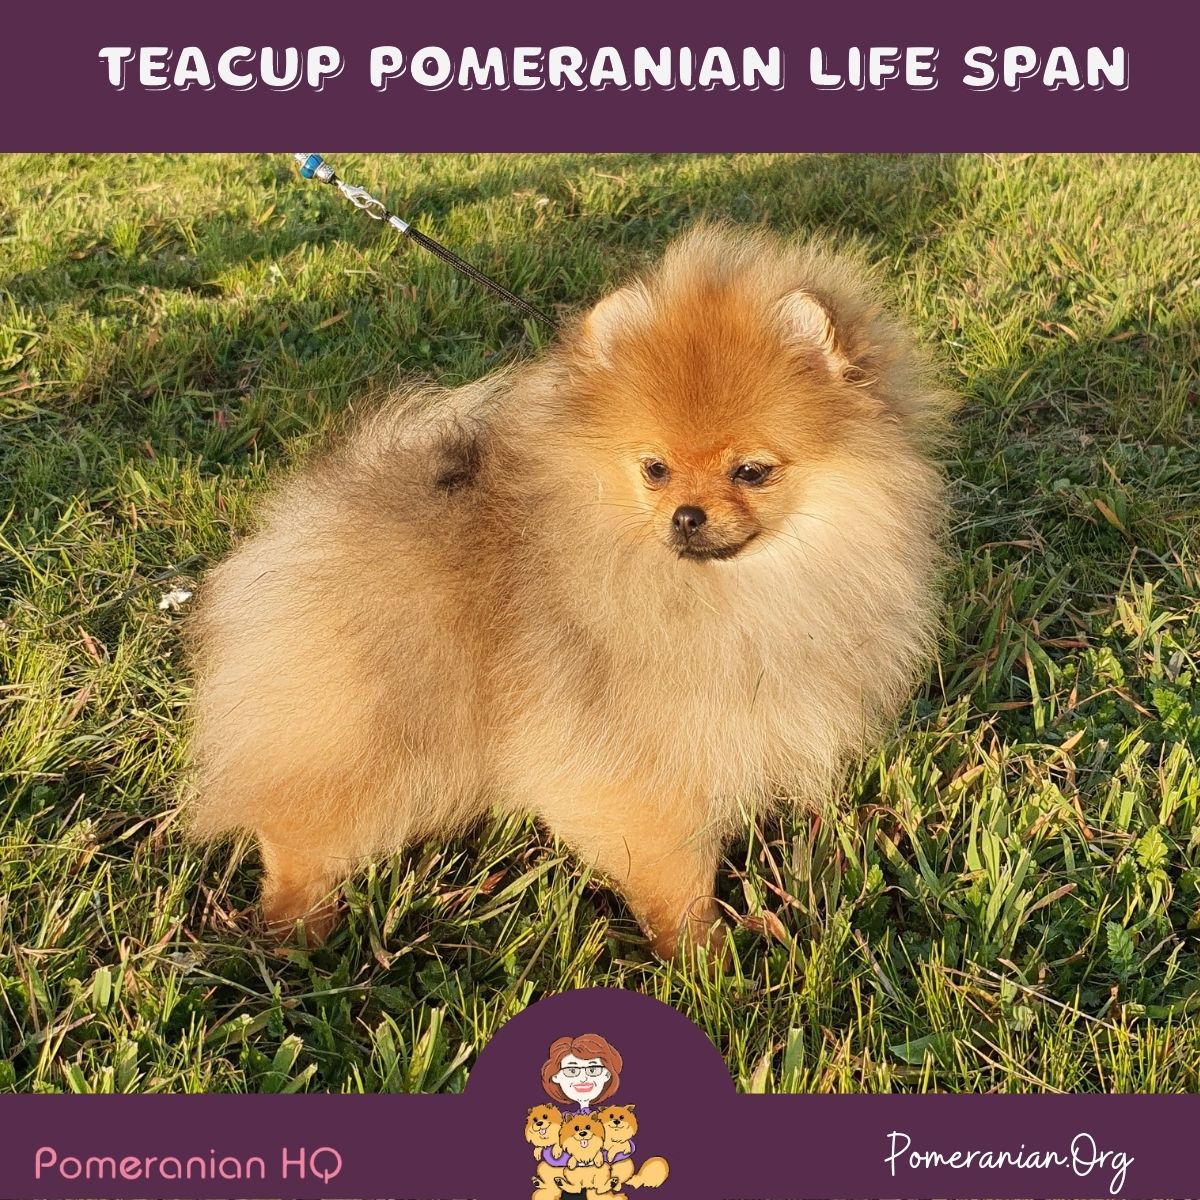 Teacup Pomeranian Life Span